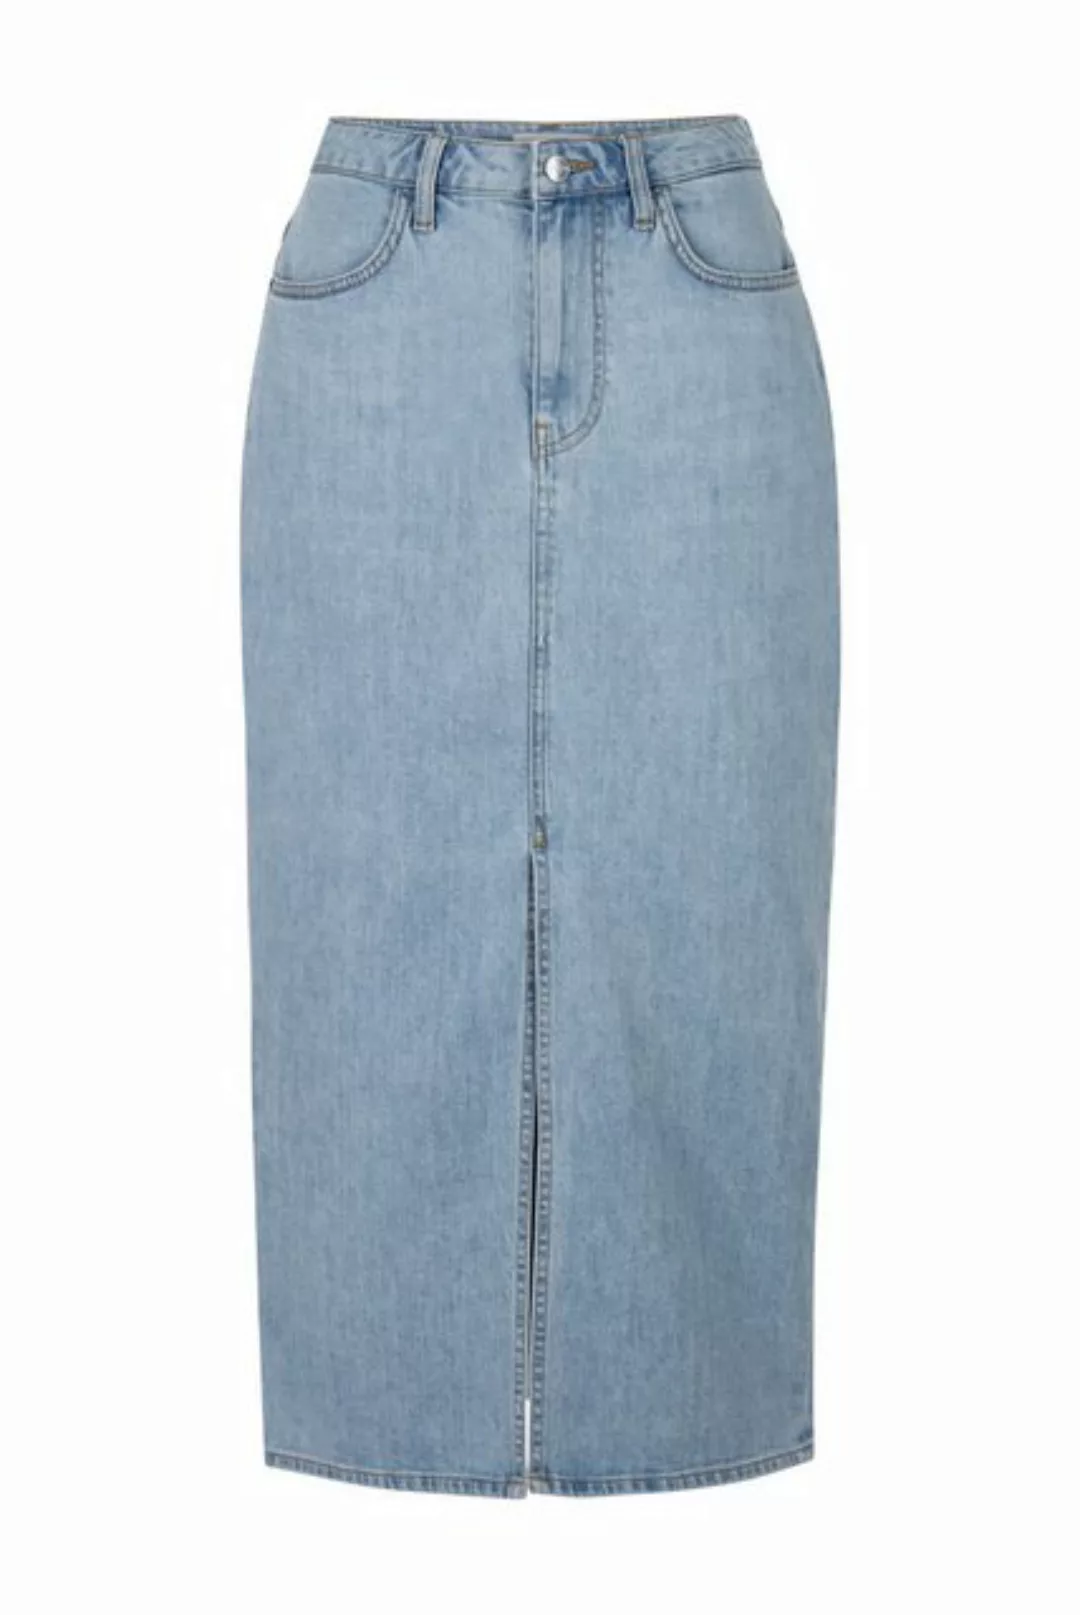 Rich & Royal Minirock long blue denim skirt organic, Ökot günstig online kaufen